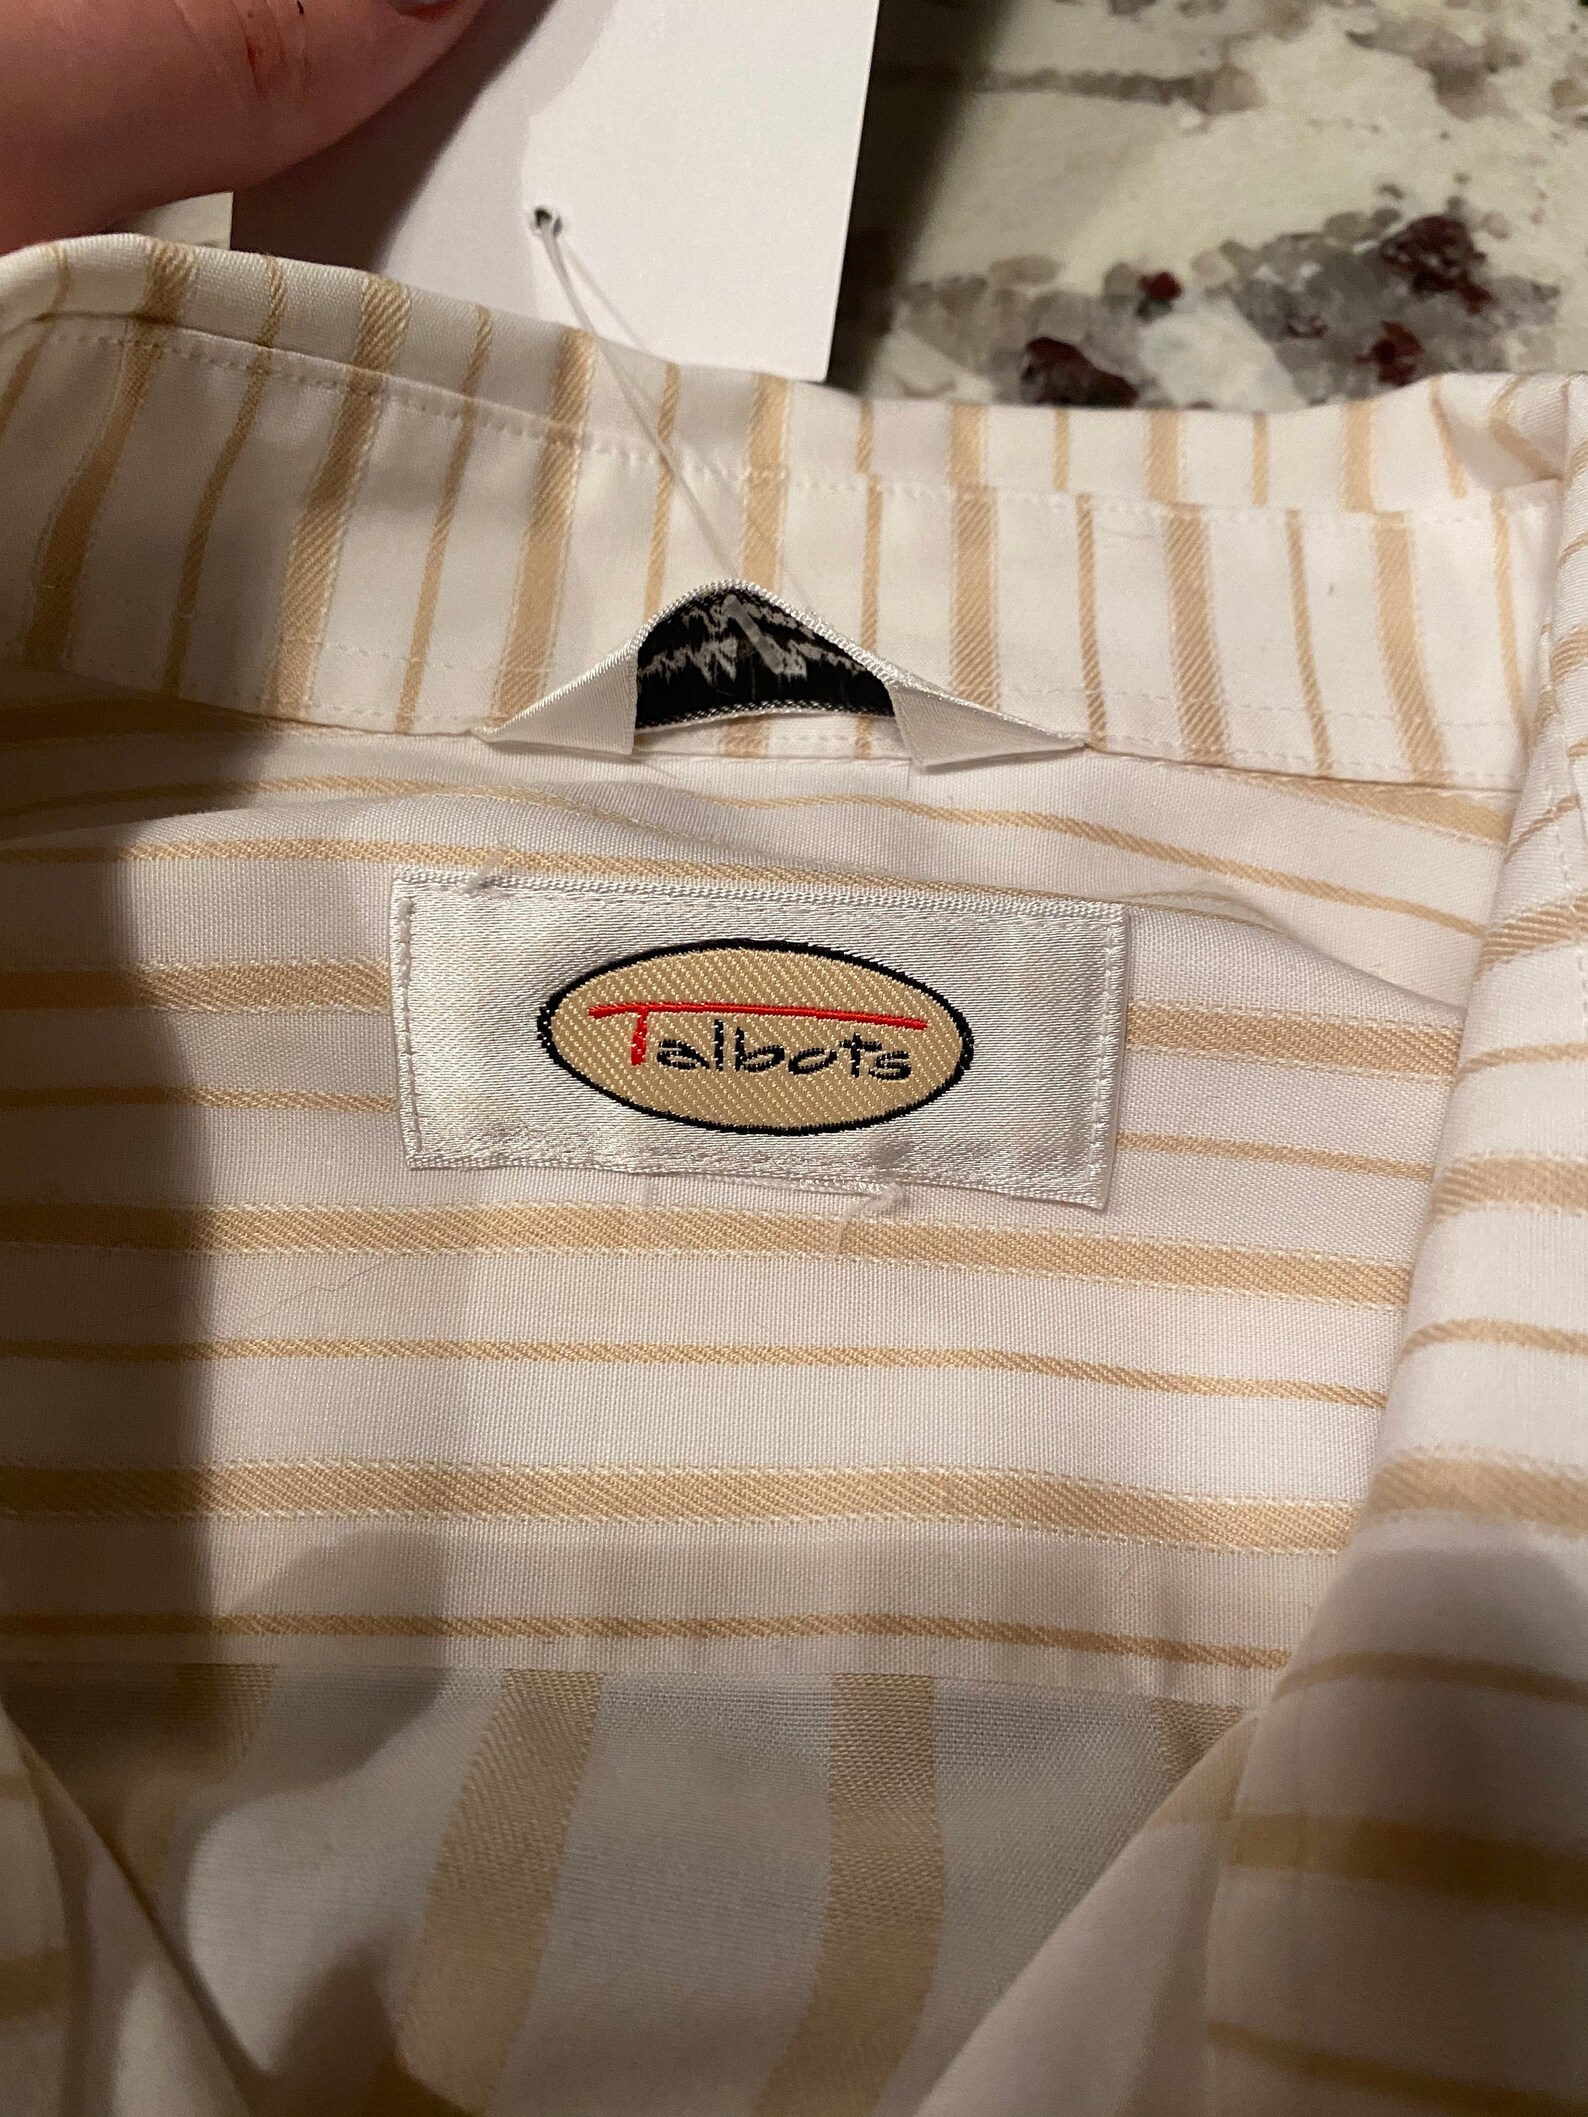 Vintage Talbots Striped Shirt | Etsy